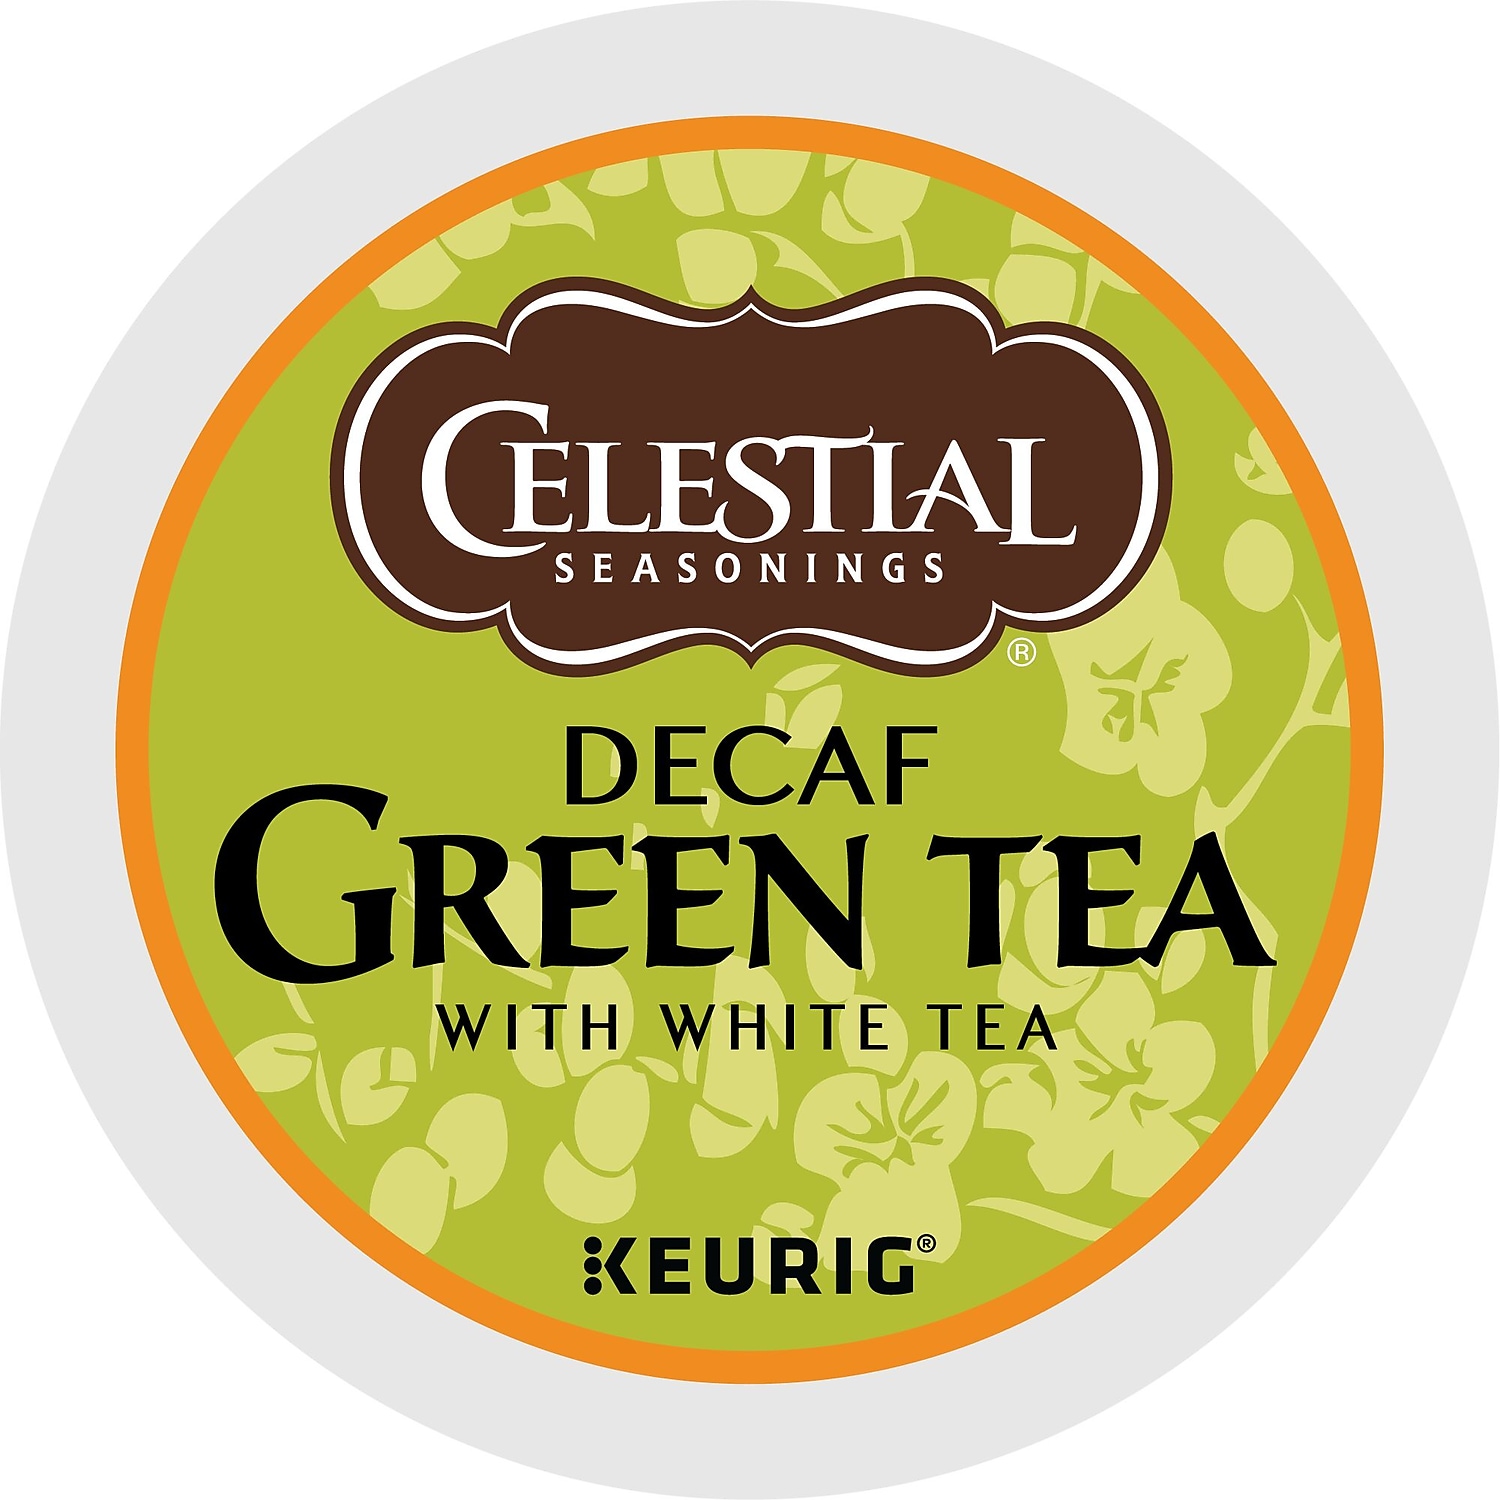 Celestial Seasonings Green Tea Decaf Keurig K-Cup Pods 24/Box 14737 - image 3 of 6